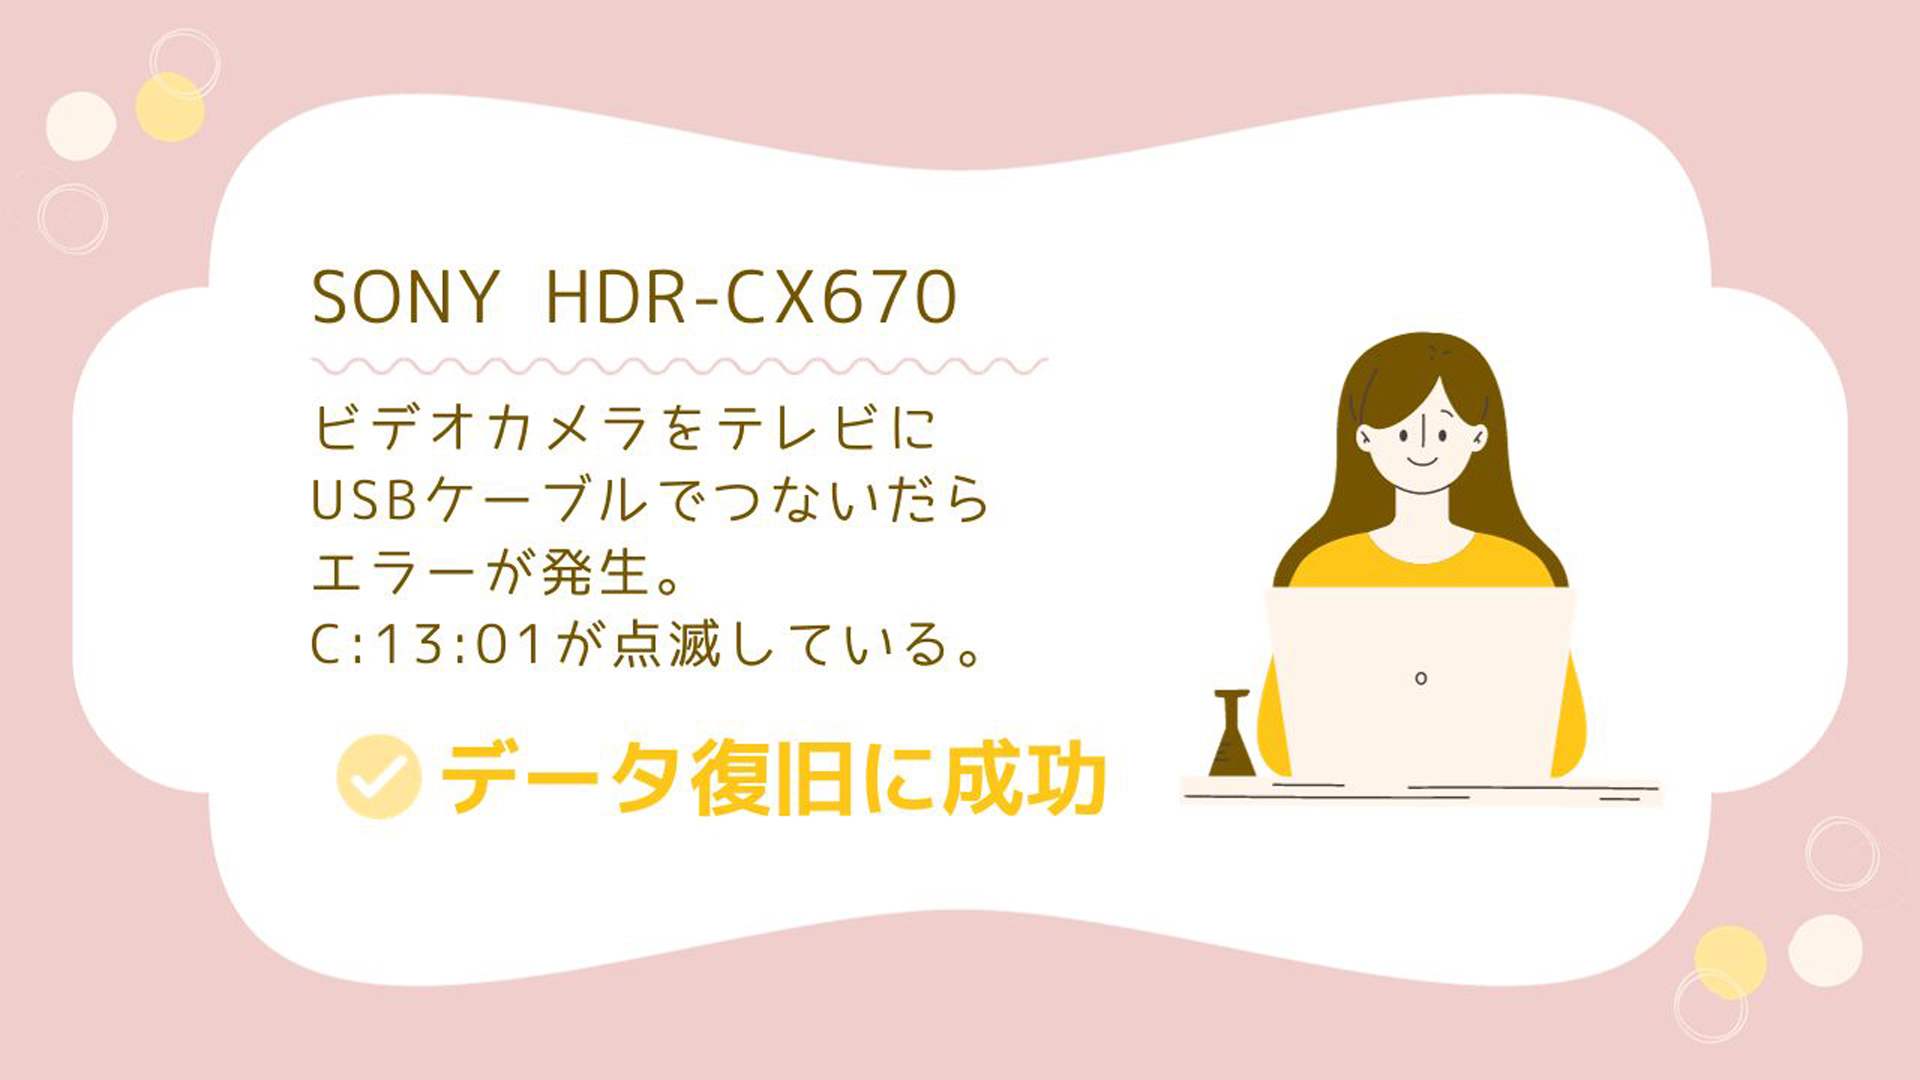 SONY HDR-CX670エラーコードC:13:01 実例で学ぶデータ復旧の秘訣